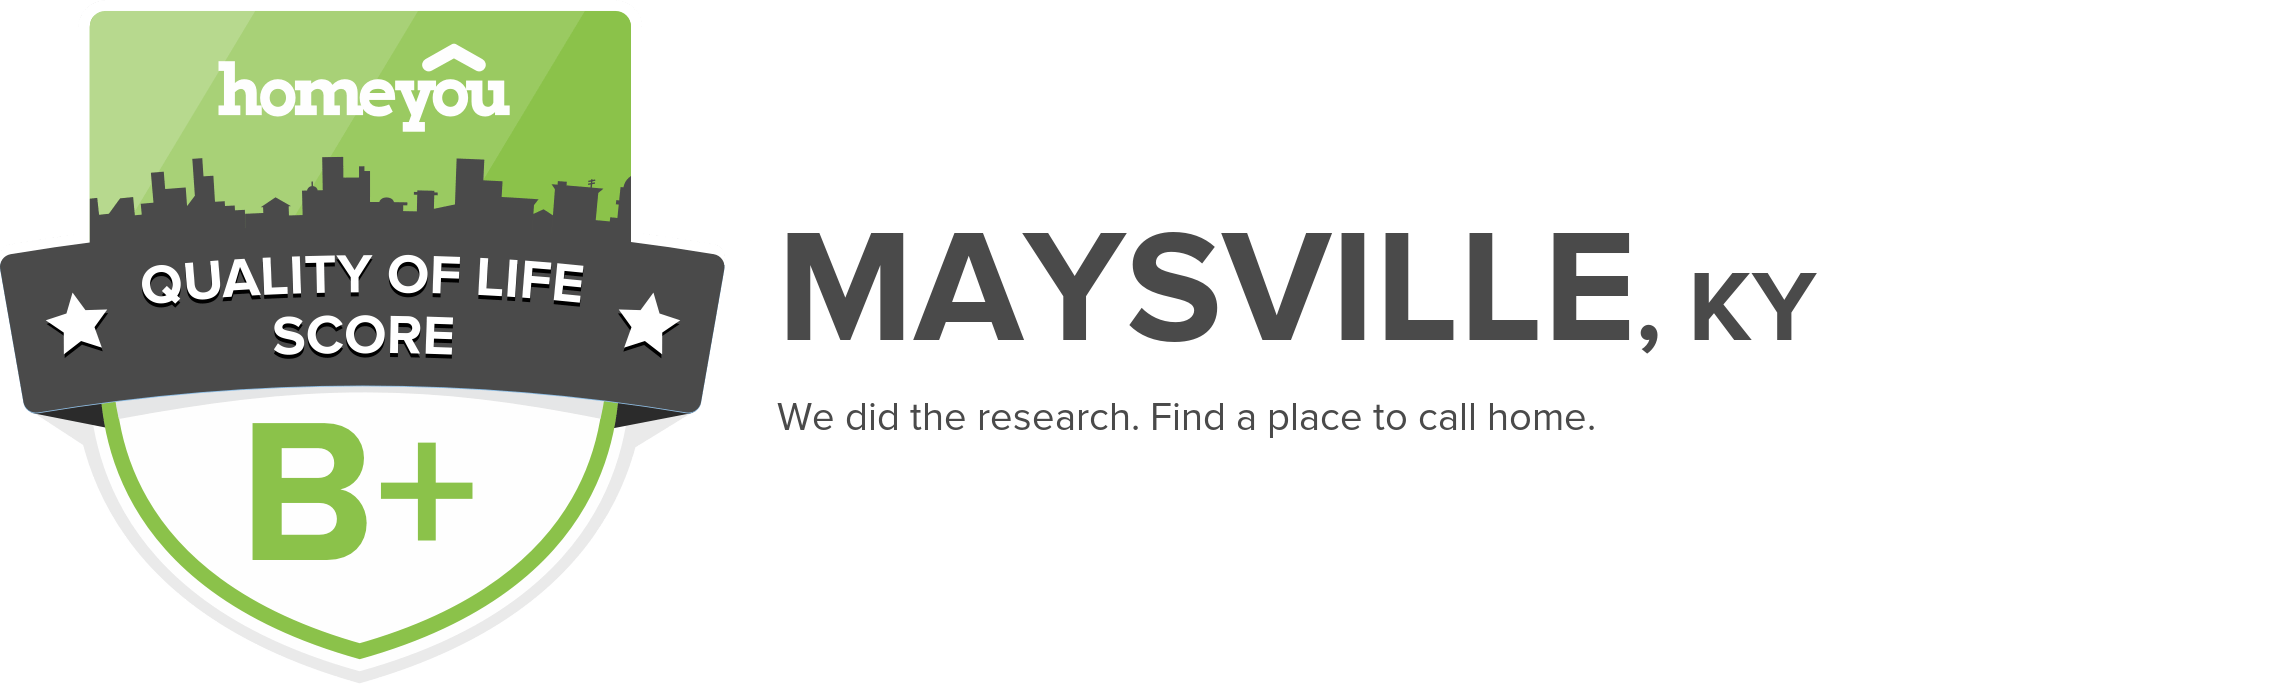 Maysville, KY